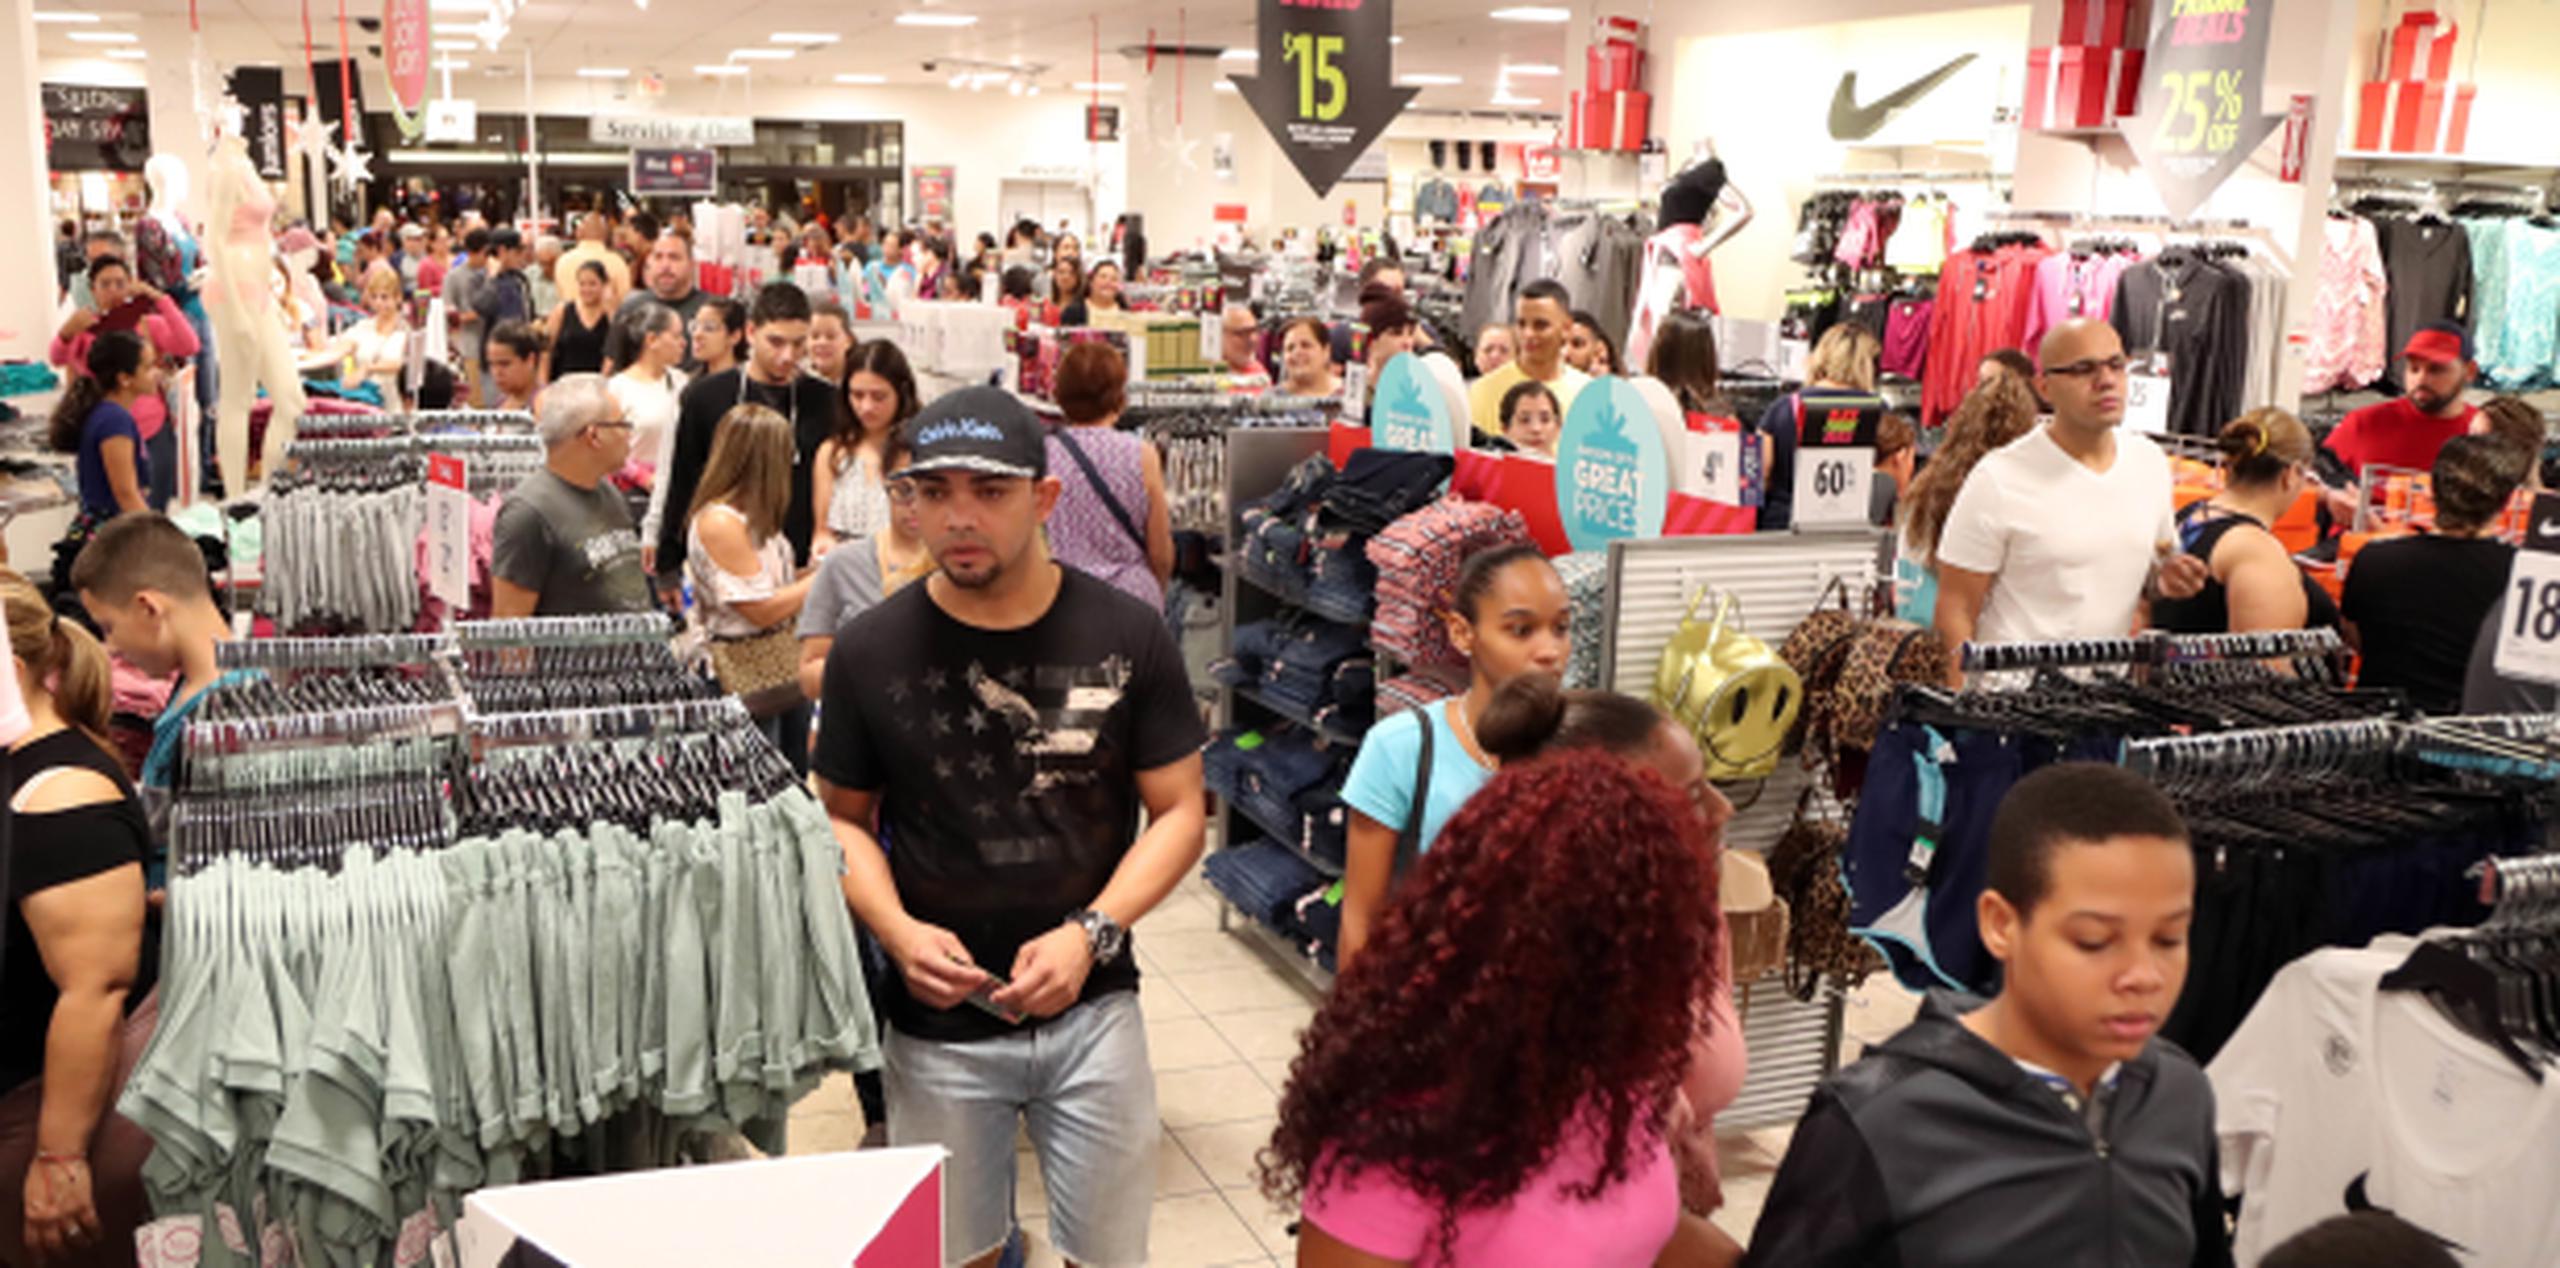 Pierluisi indicó que la constante ha sido que se reporten menos filas en los comercios “a excepción de Walmart”. (david.villafane@gfrmedia.com)